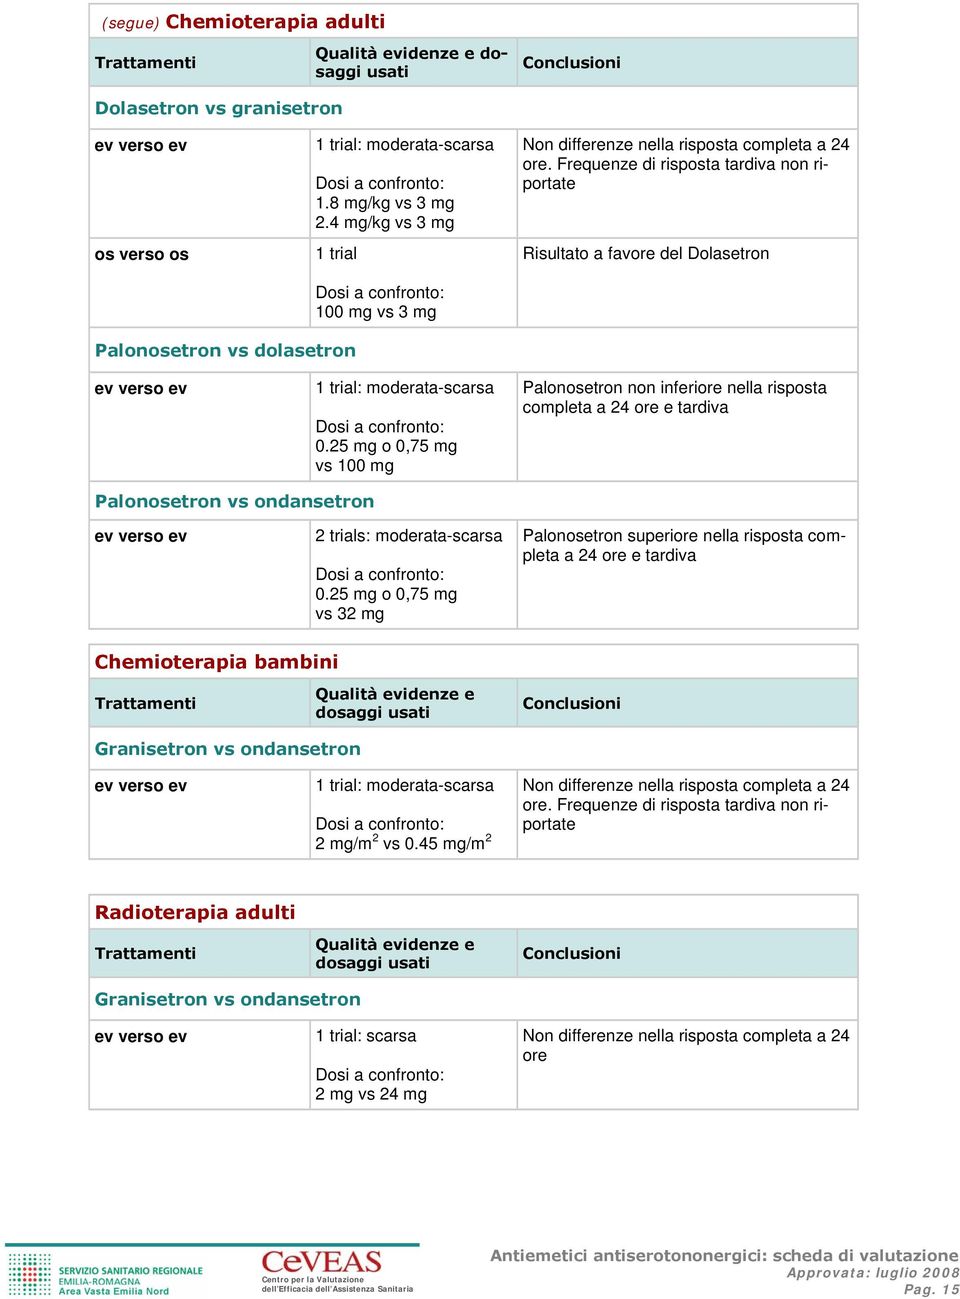 25 mg o 0,75 mg vs 100 mg Palonosetron non inferiore nella risposta completa a 24 ore e tardiva Palonosetron vs ondansetron 2 trials: moderata-scarsa 0.